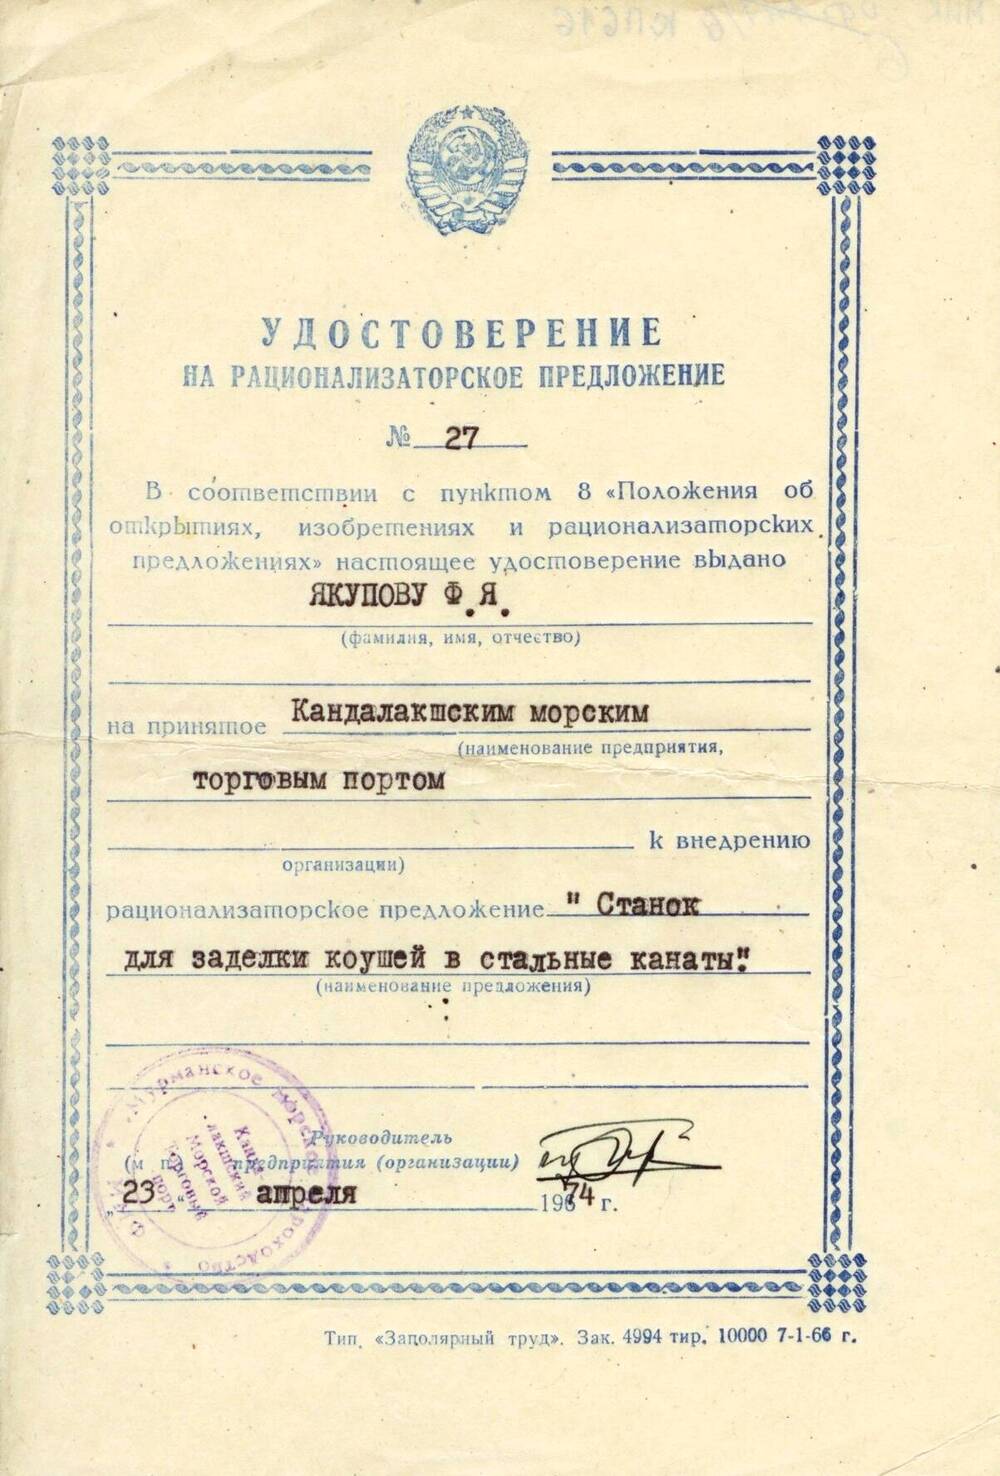 Удостоверение на рационализаторское предложение № 27 Якупова Ф. Я.